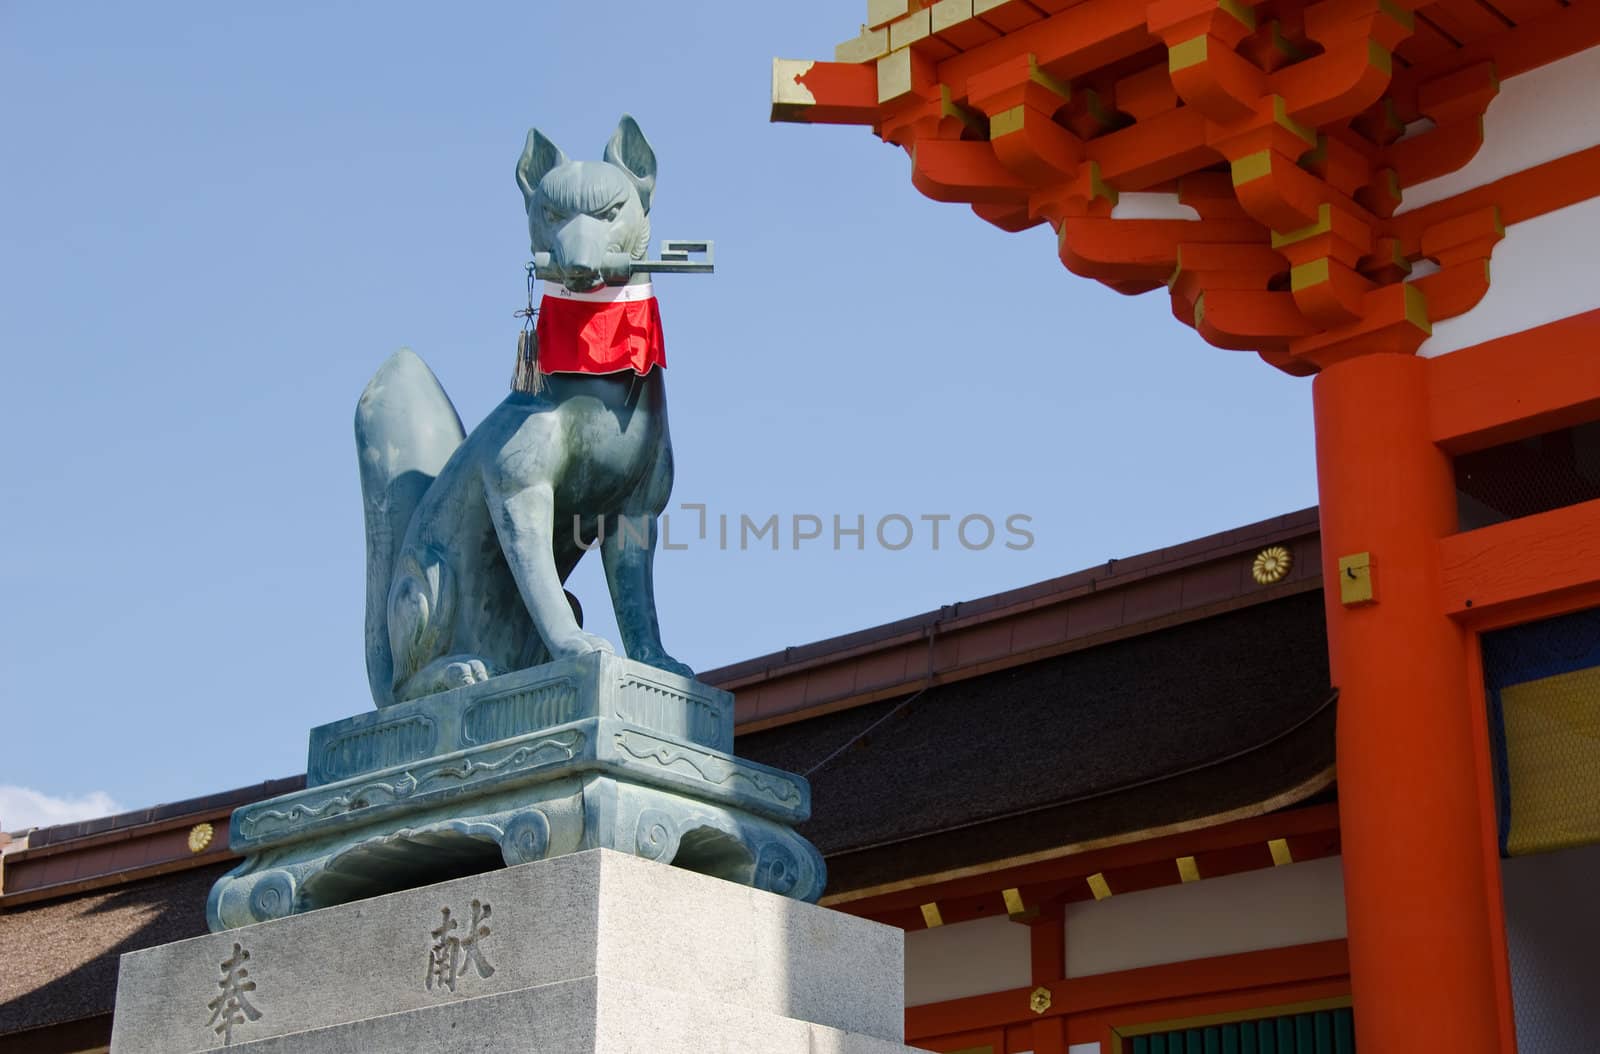 Fox statue at the Fushimi Inari taisha Shrine in Kyoto Japan